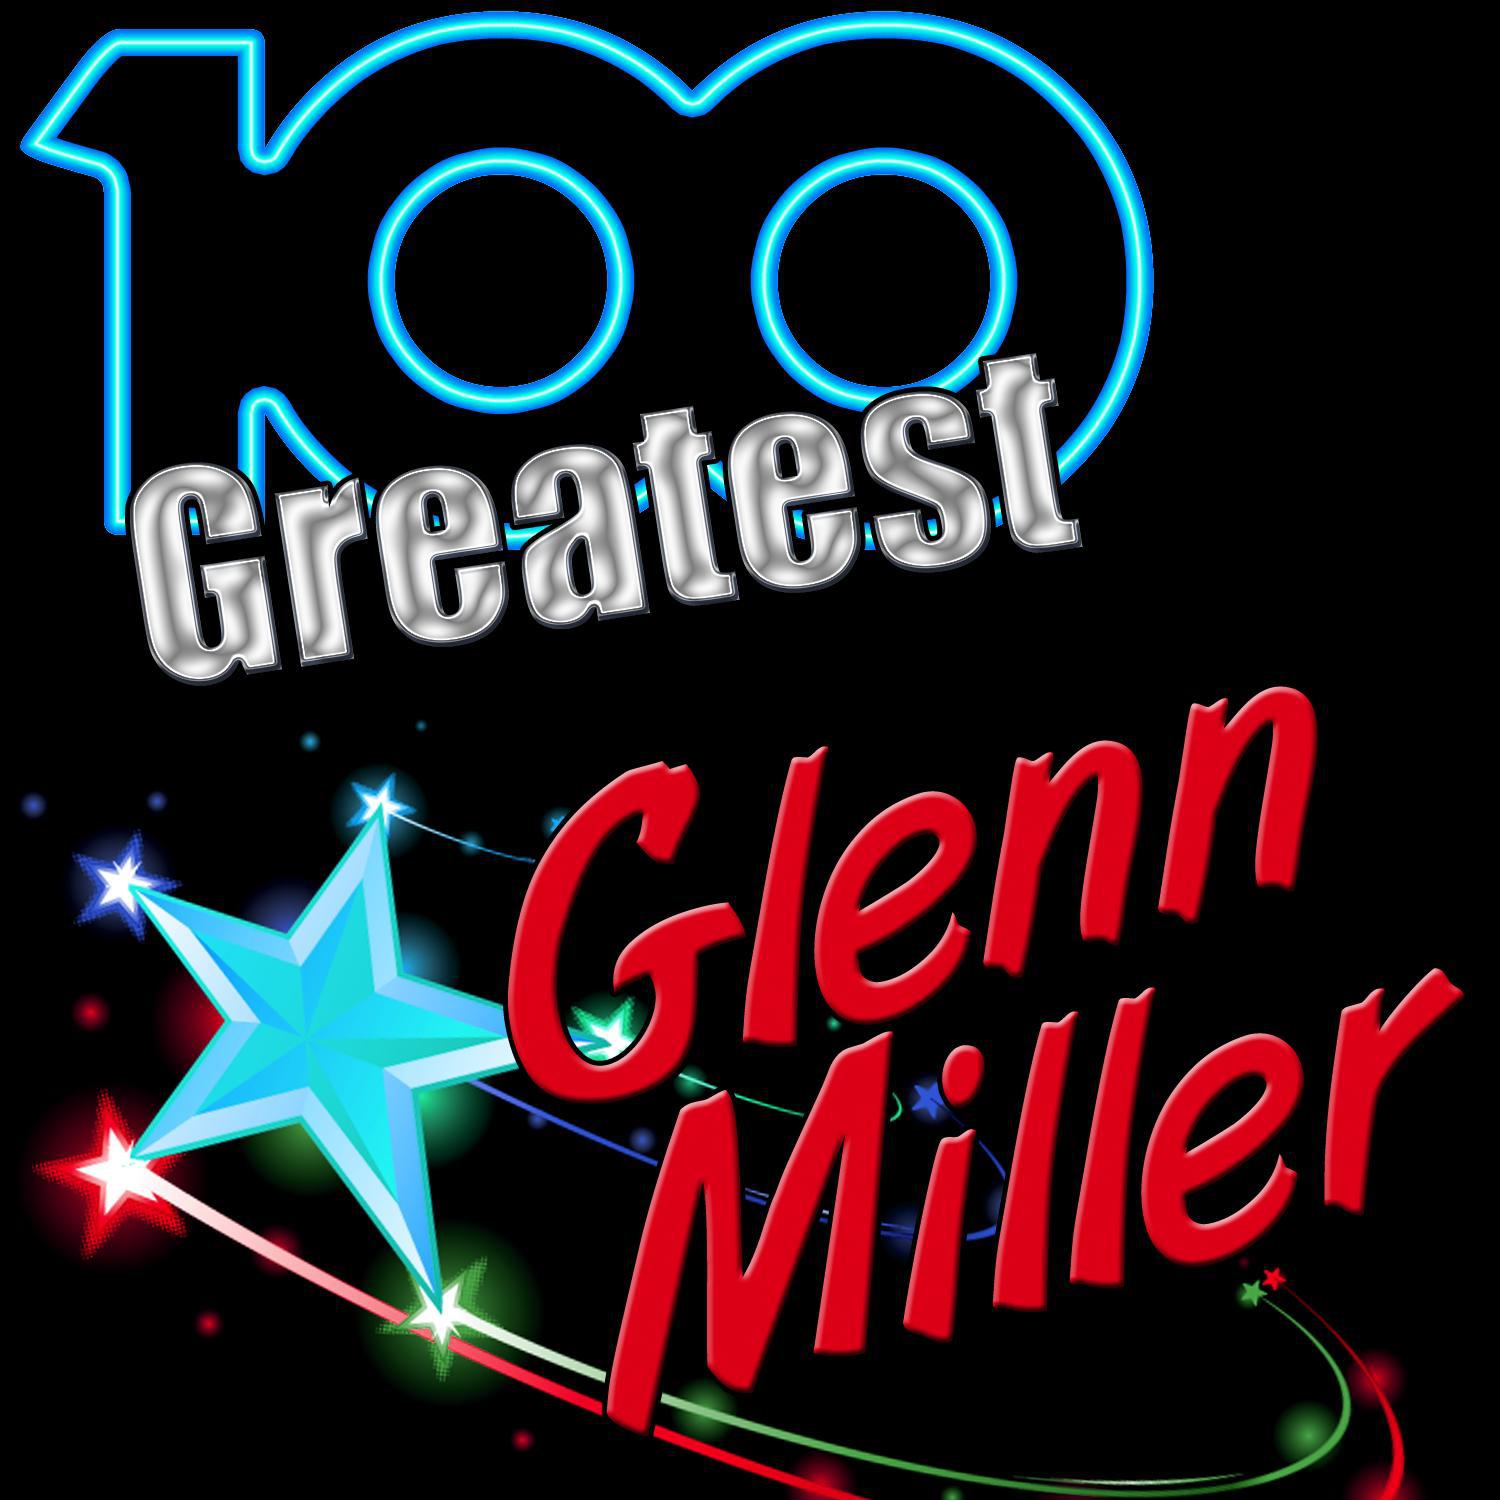 100 Greatest: Glenn Miller